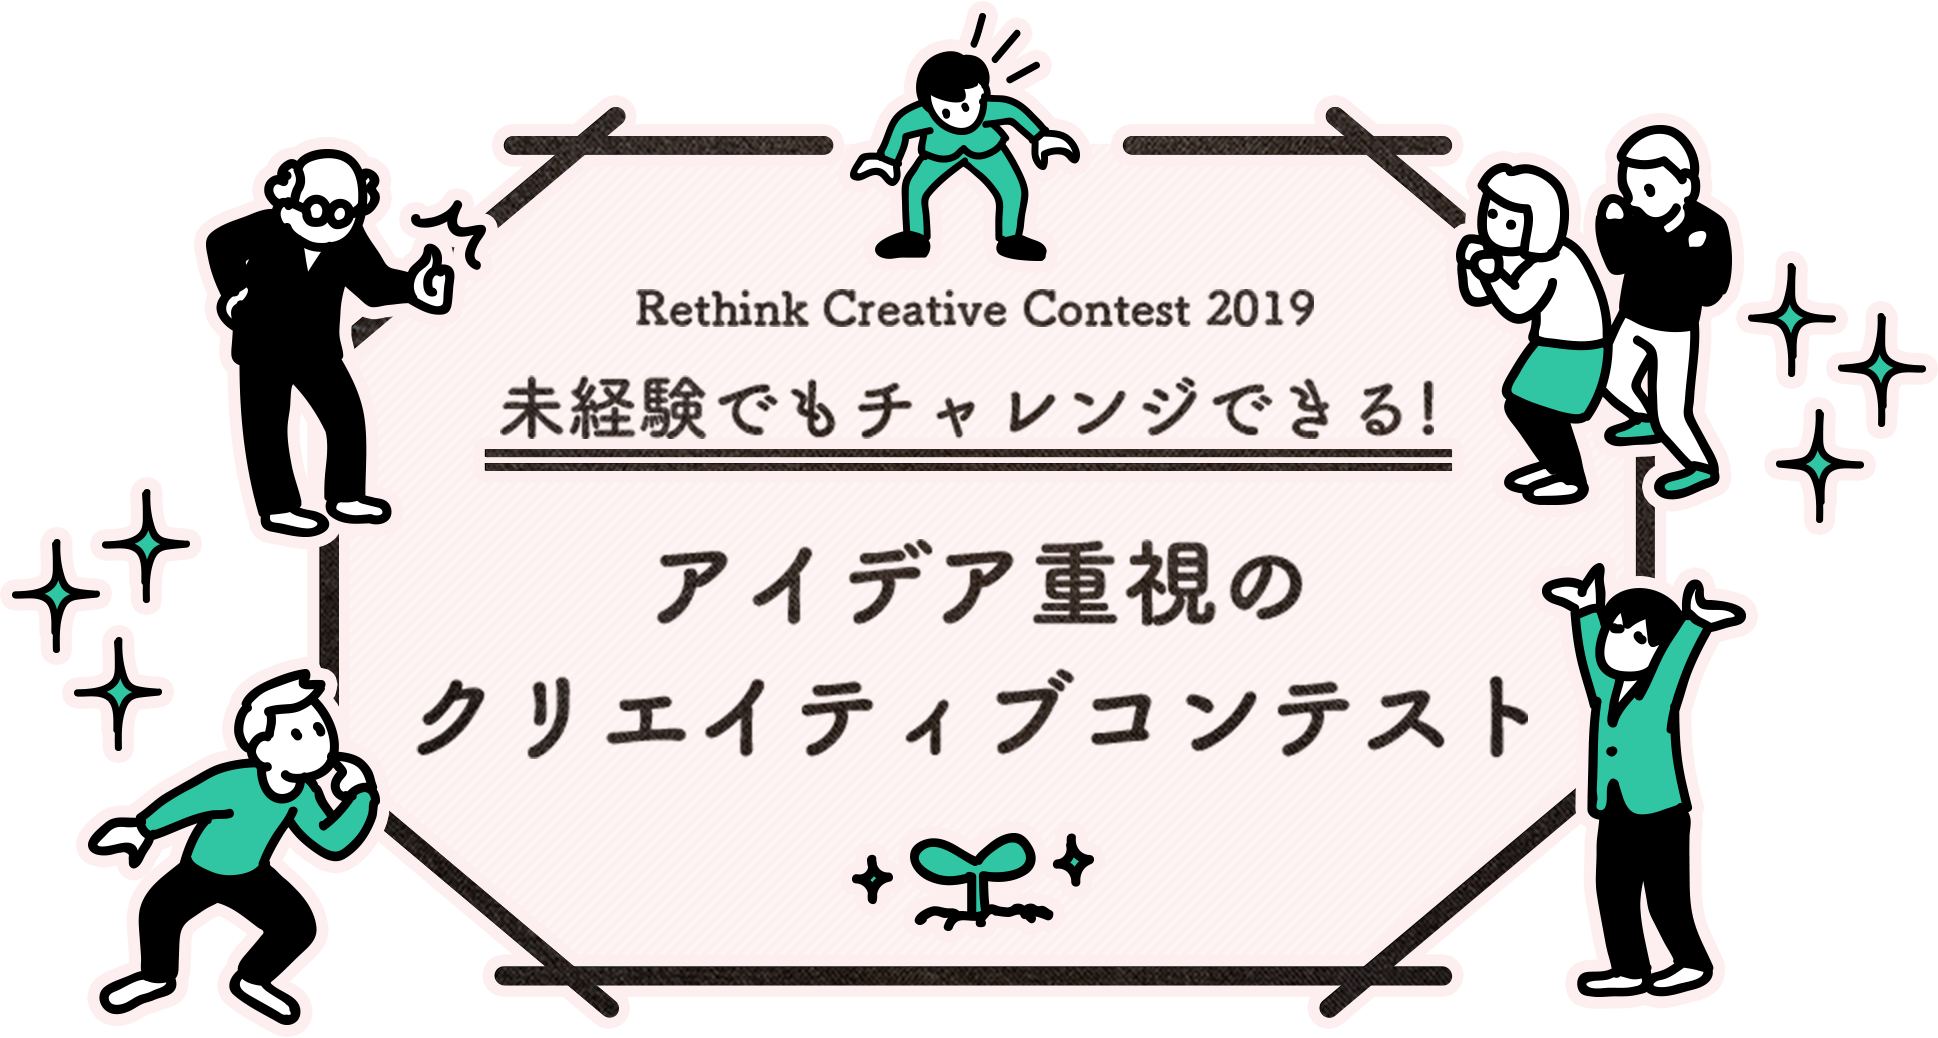 Rethink Creative Contest 2019 未経験でもチャレンジできる!アイデア重視のクリエイティブコンテスト